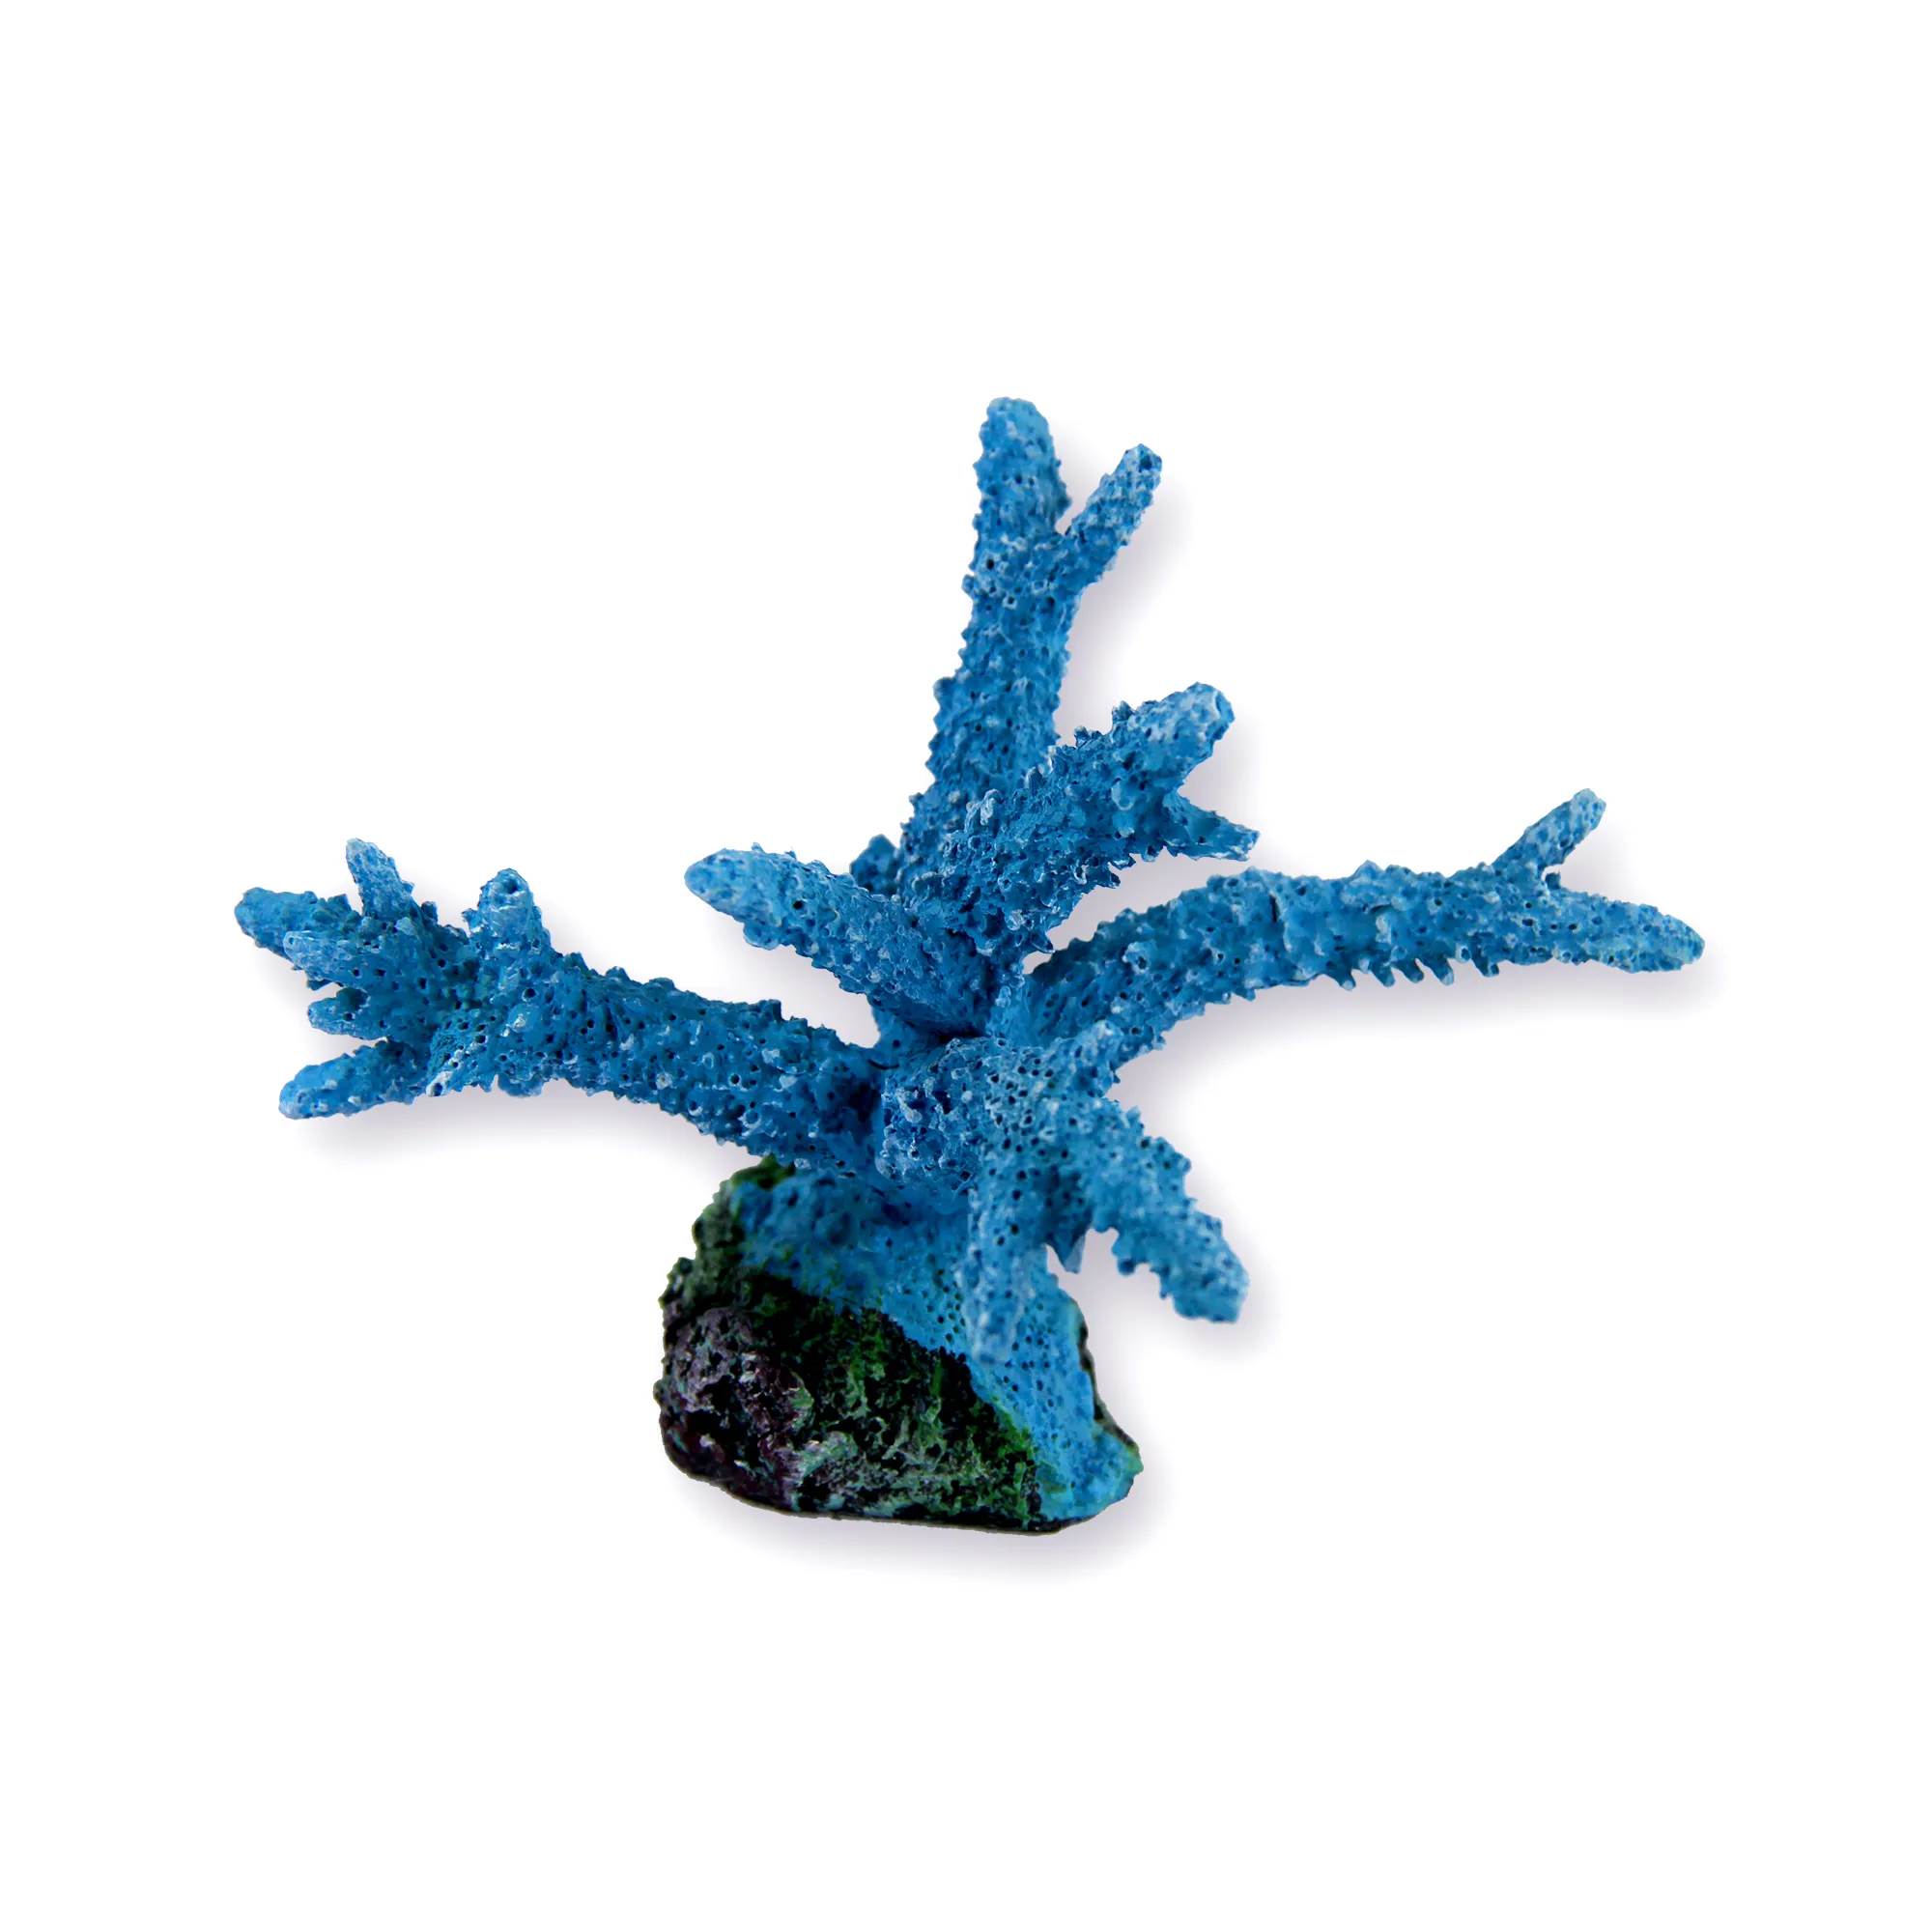 Ben progettato Blu Tesoro acquario marino fatti a mano in resina reef coralli